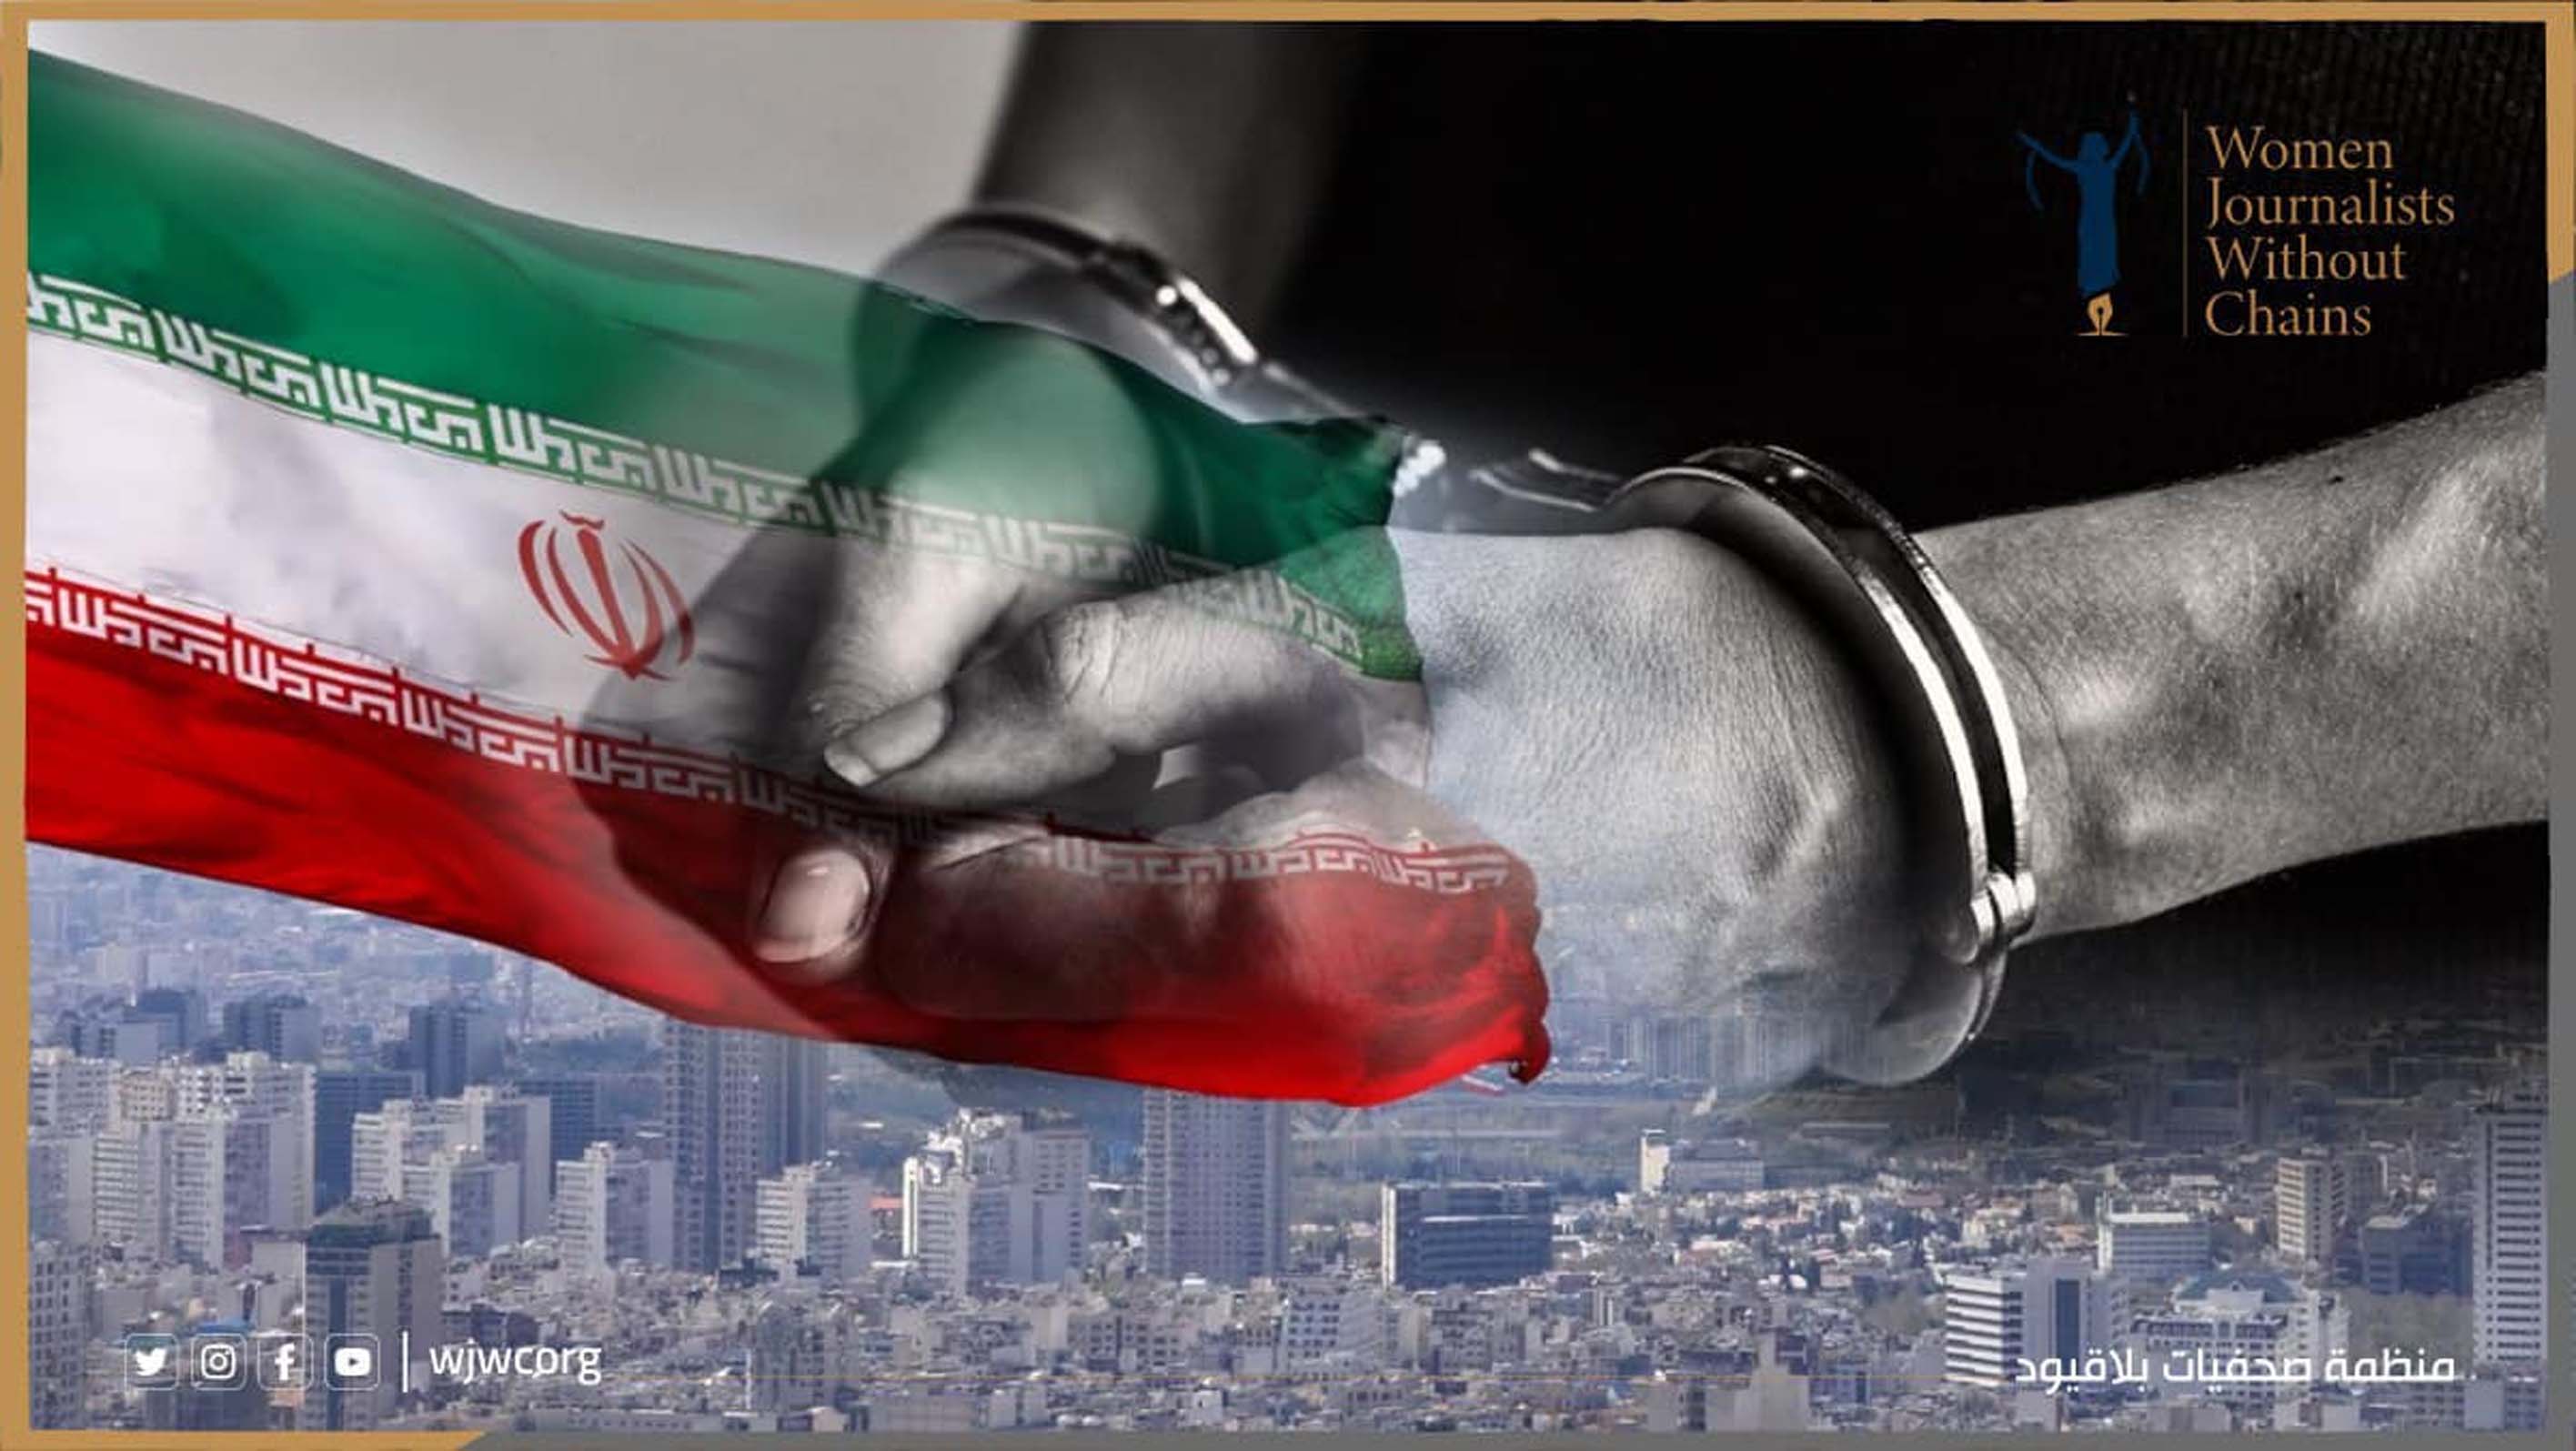 حرية الصحافة في إيران: سجّل طويل من الانتهاكات